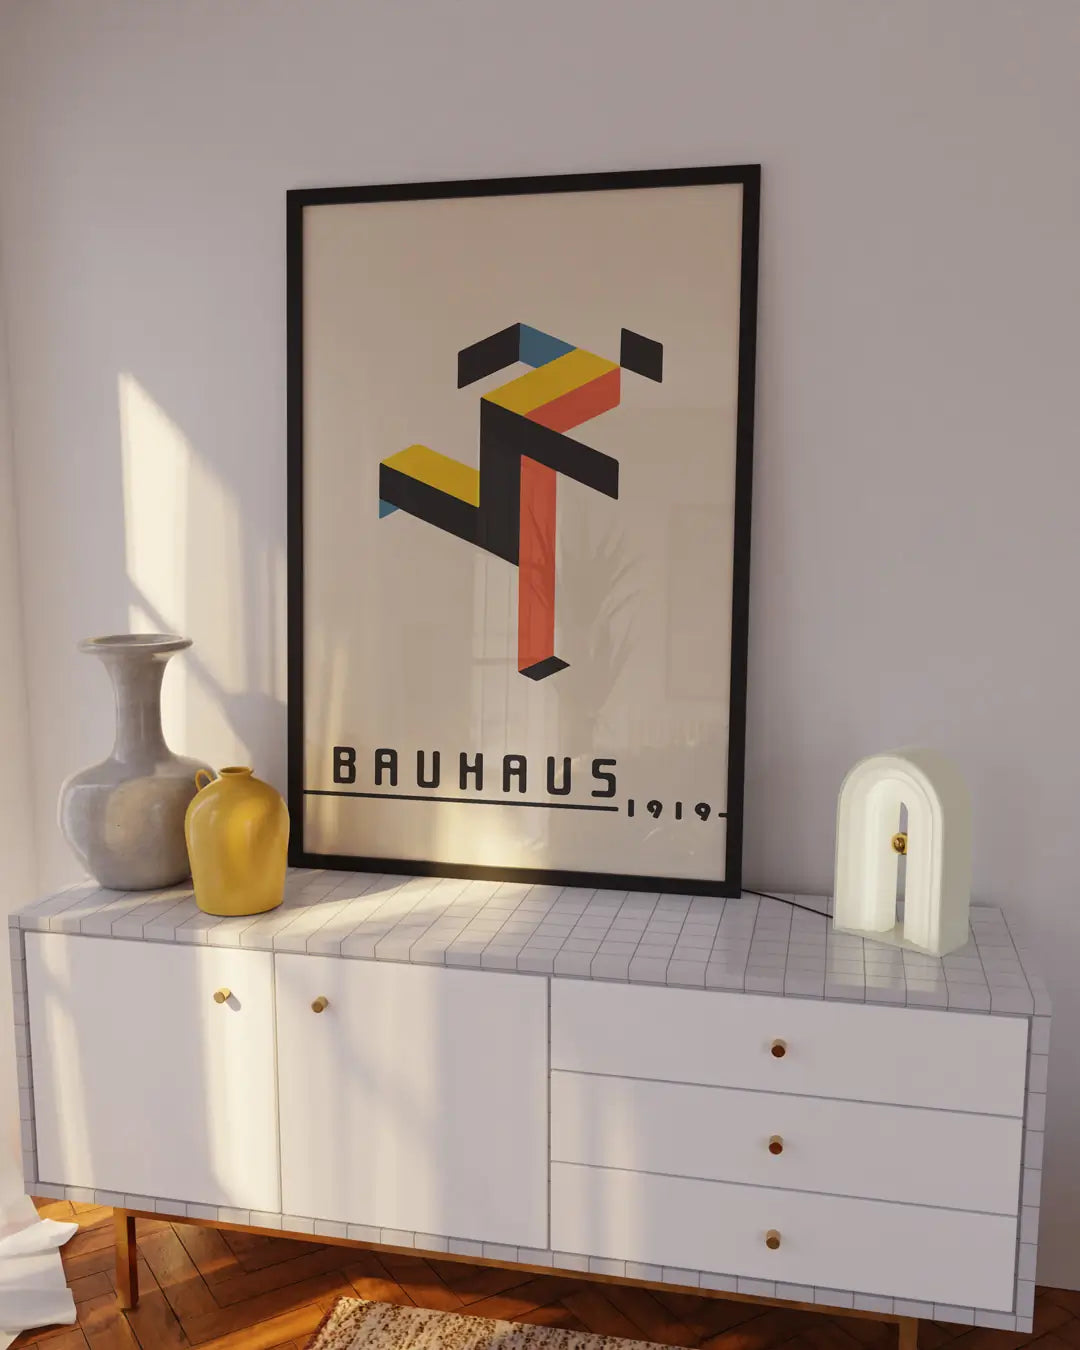 Running Bauhaus